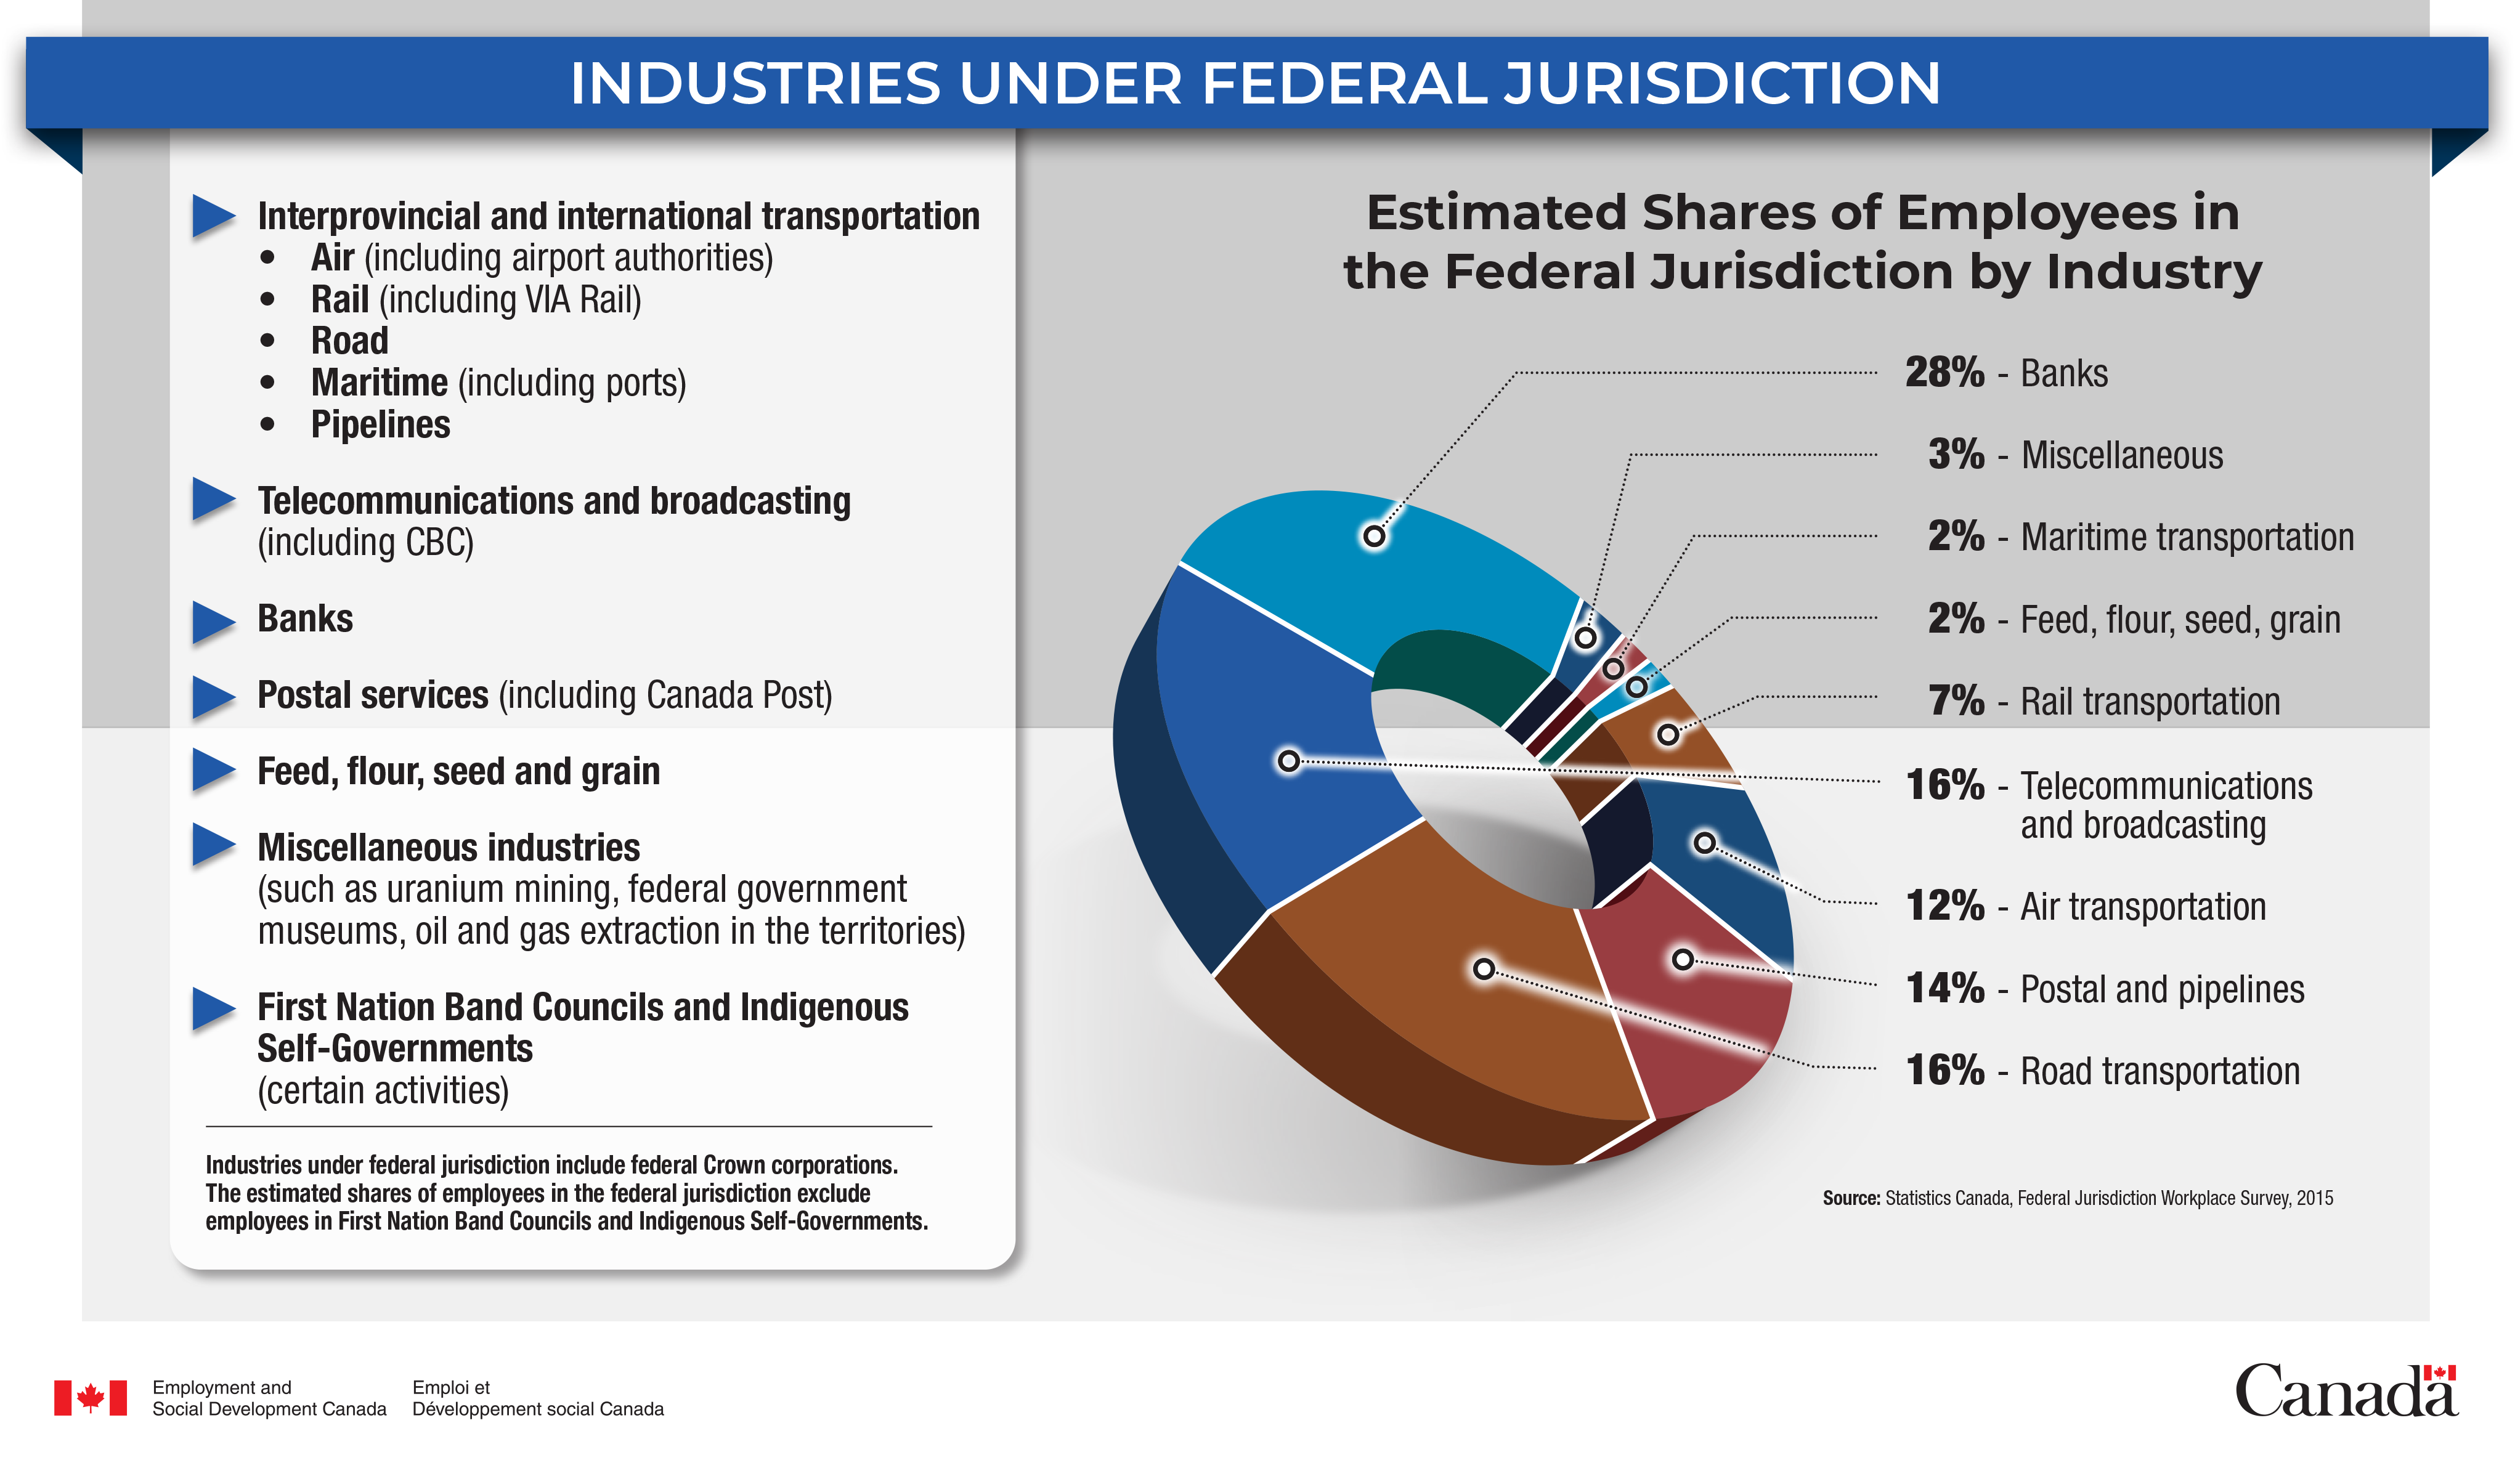 Industries under Federal Jurisdiction